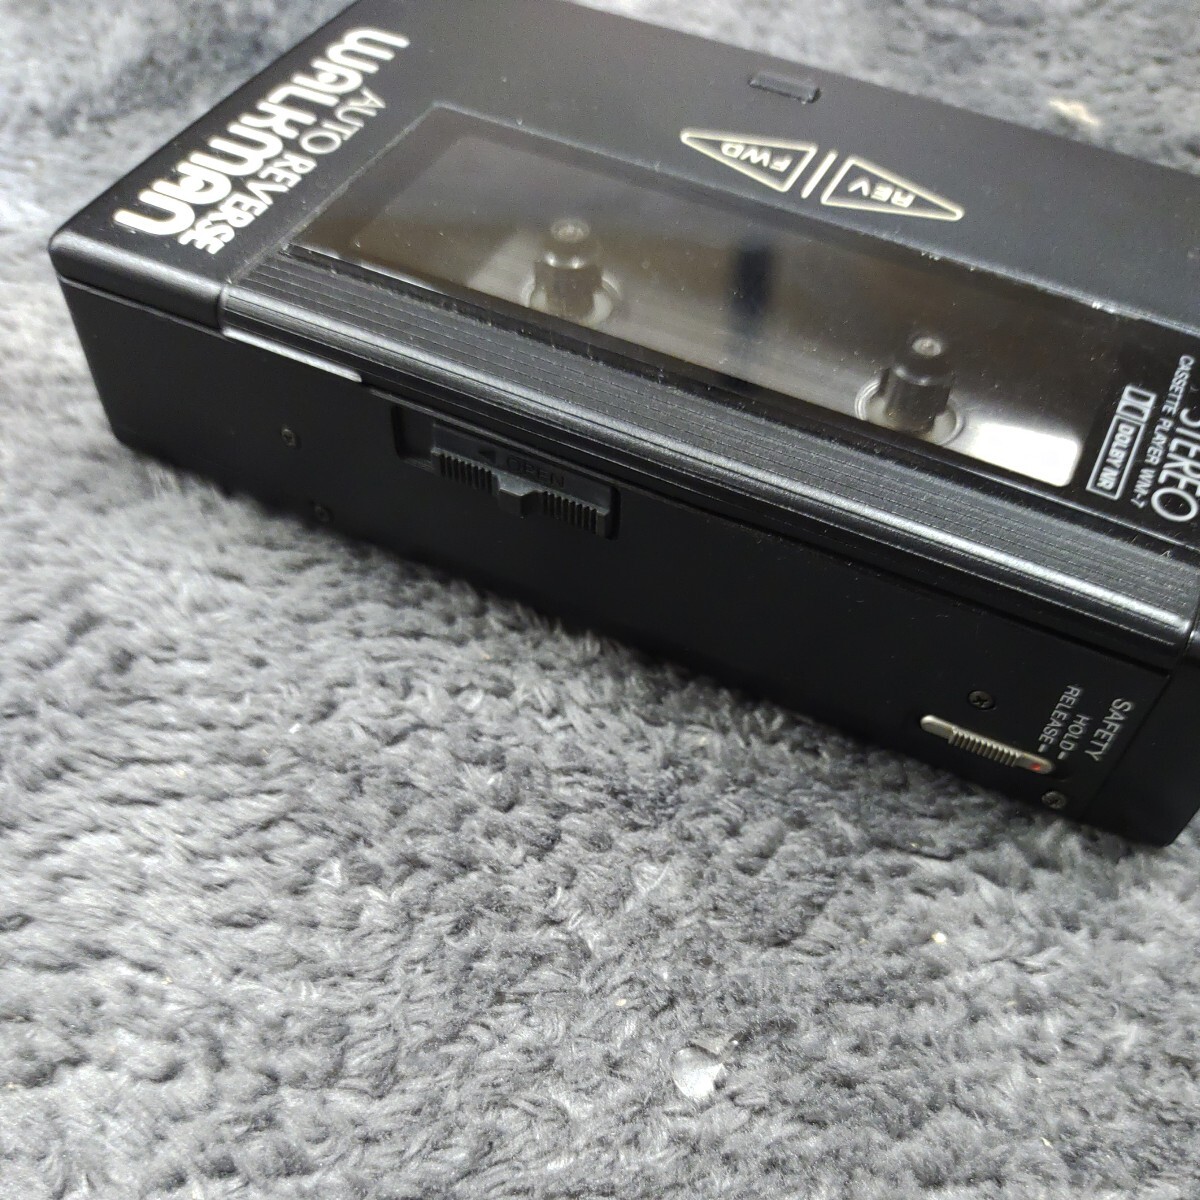 A042512 1 иен ~ электризация подтверждено SONY Sony WM-7 кассета Walkman портативный плеер кассетная магнитола звуковая аппаратура 